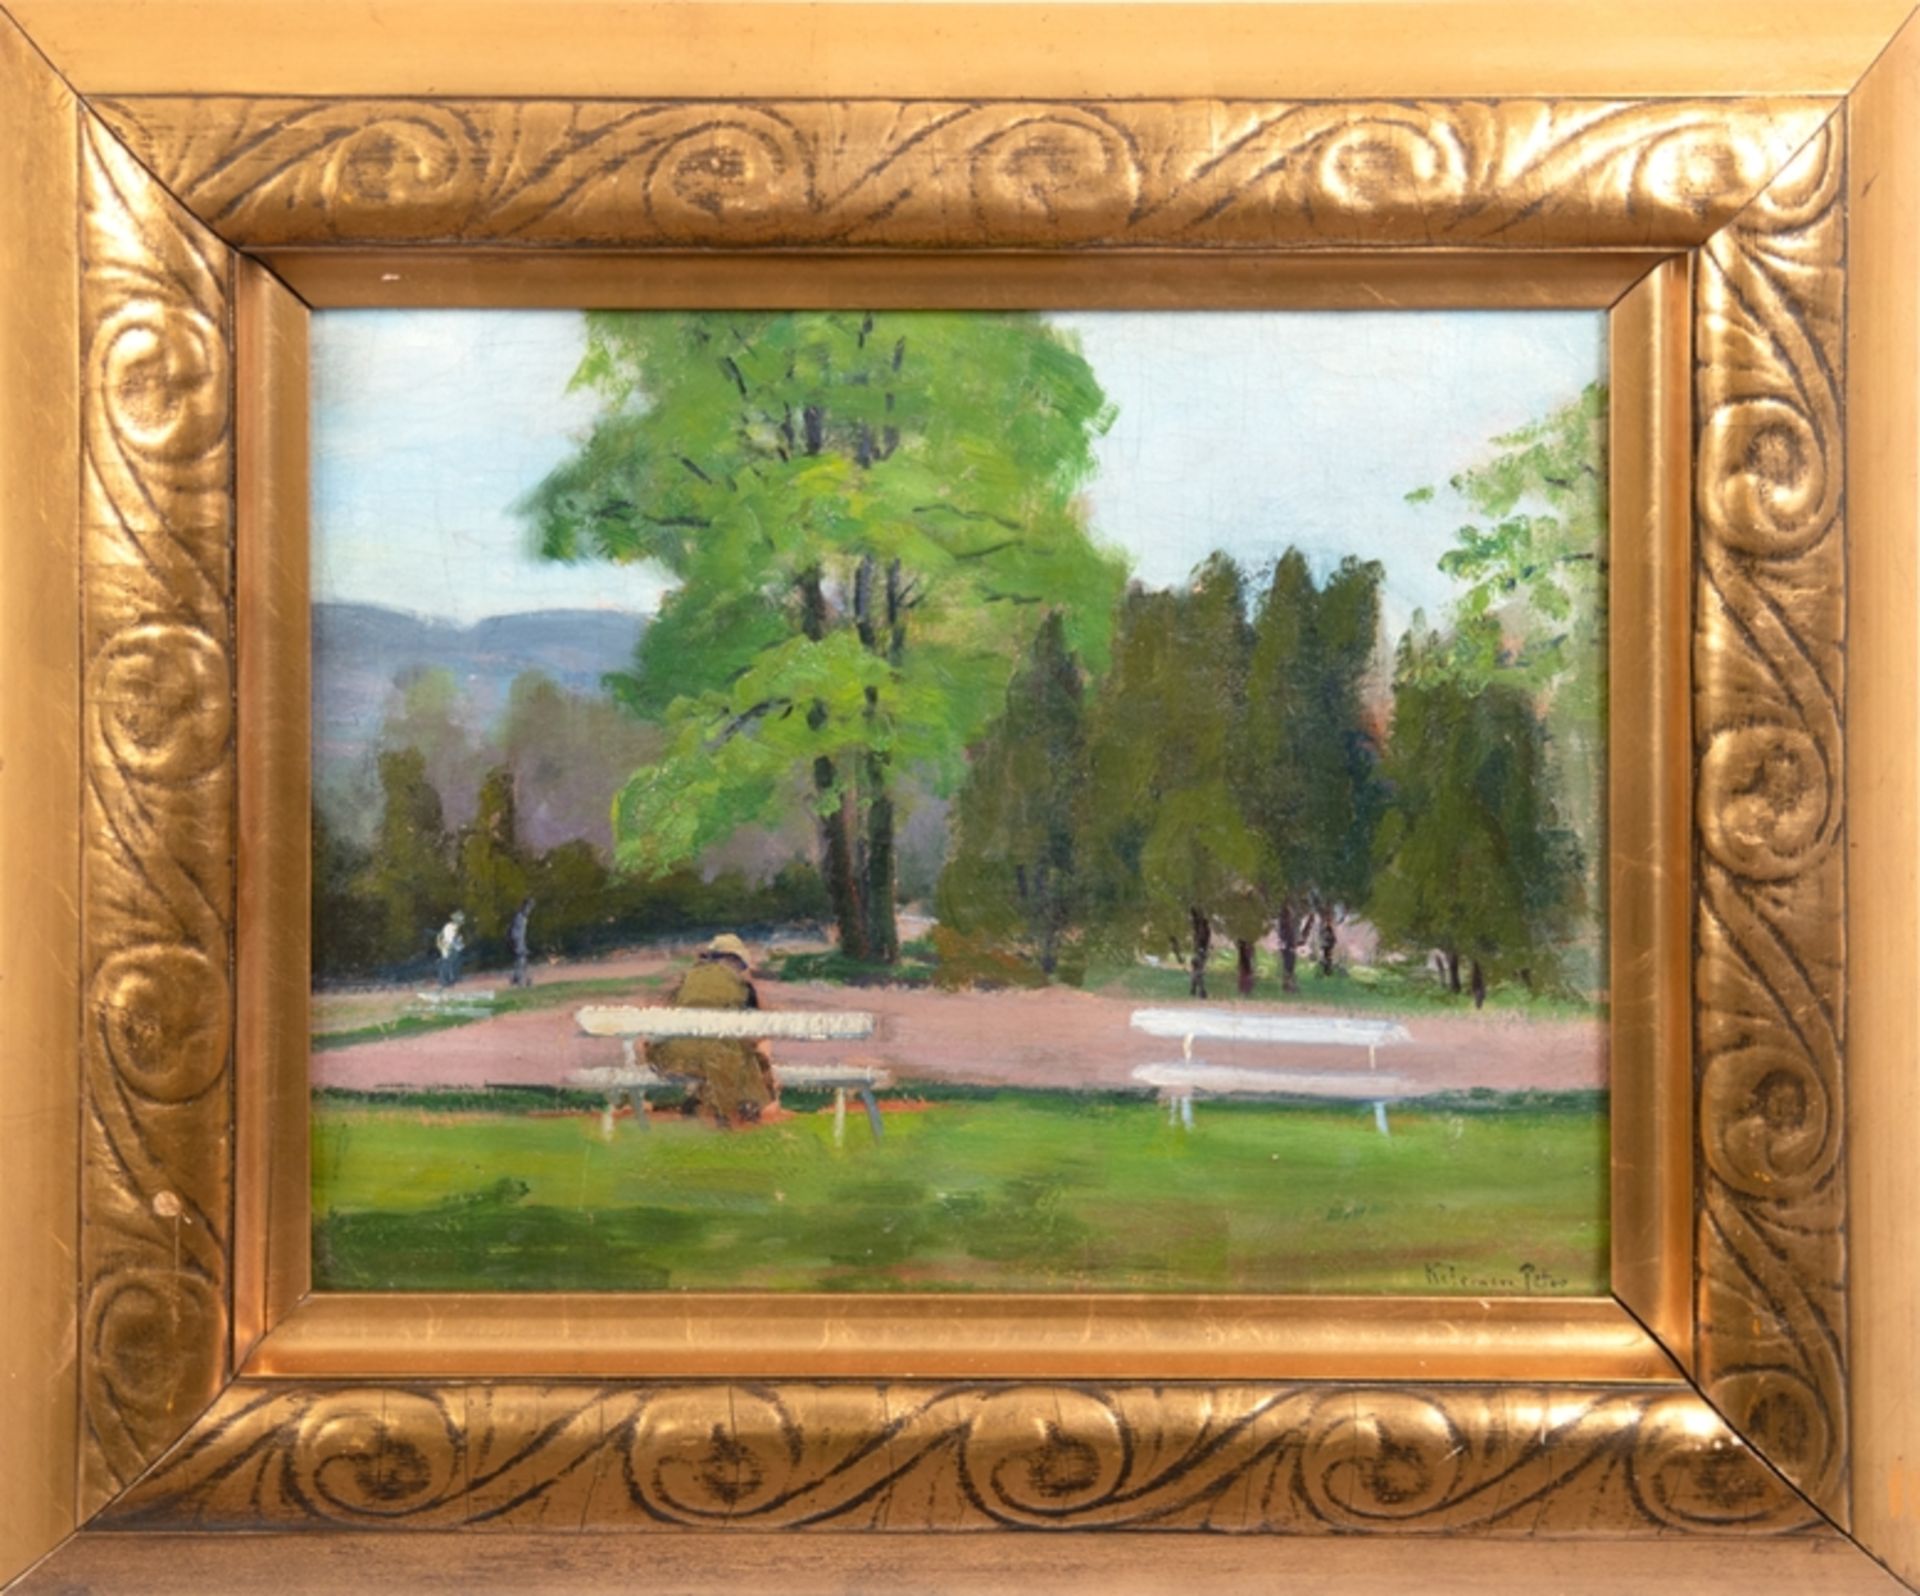 Kelemen, Peter (Ungarischer Maler 20. Jh.) "Parklandschaft mit alten Baumbestand und Personenstaffa